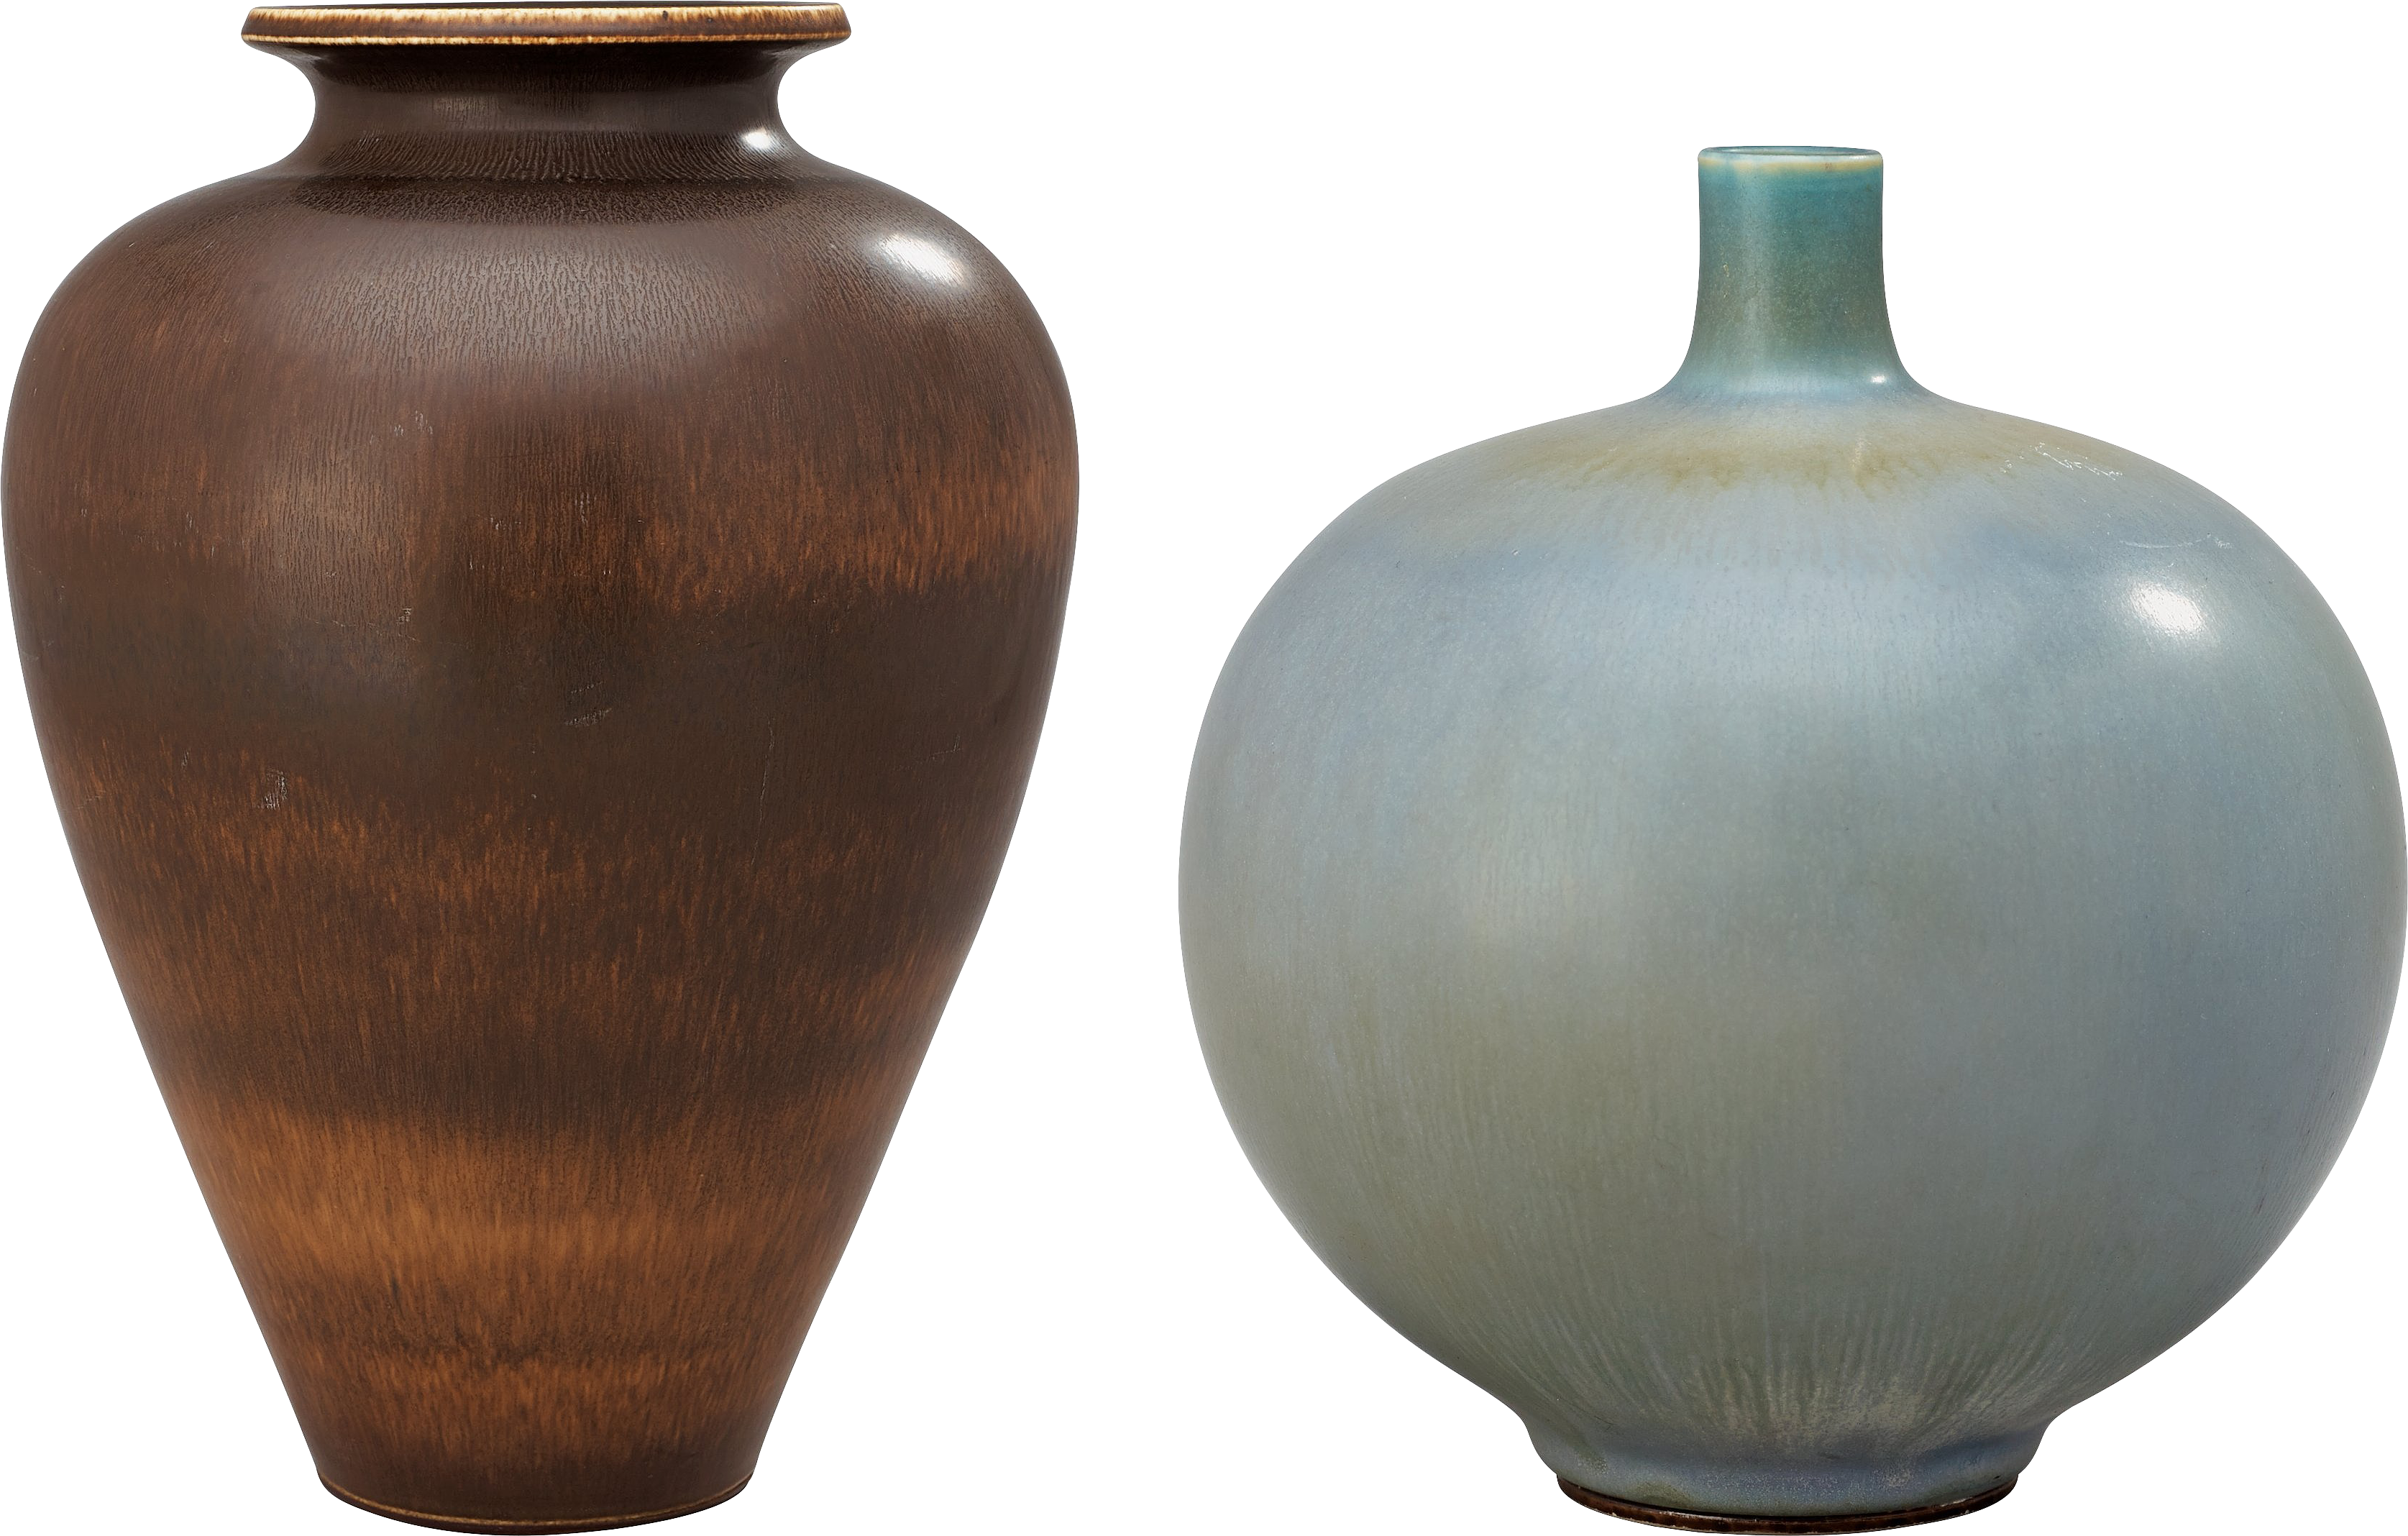 Vase Background PNG Image